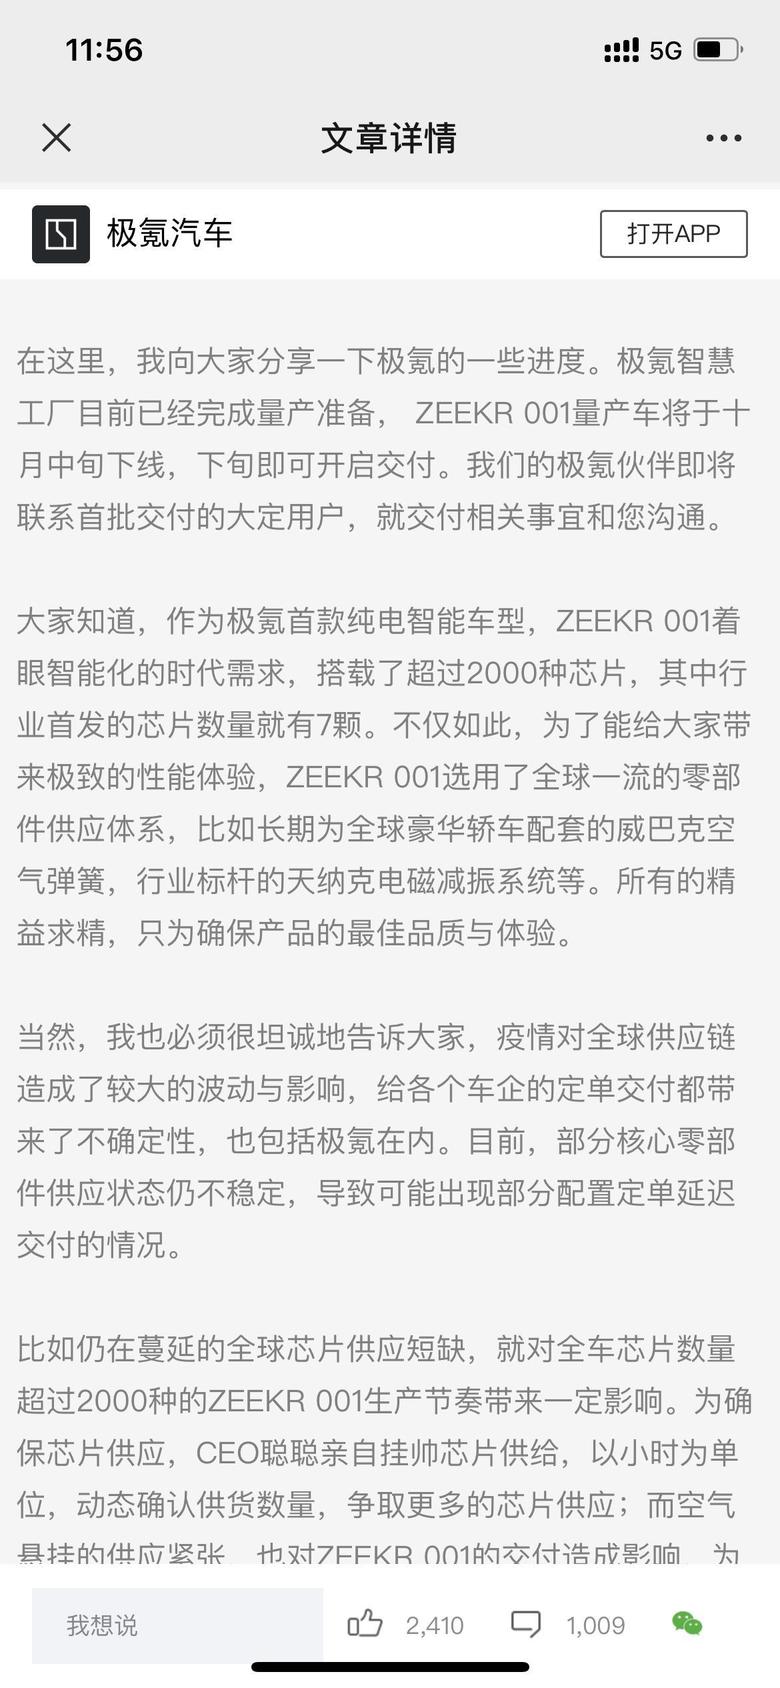 zeekr 001 Steven在广州开城现场已经正式释放“十月中旬量产下线，十月下旬开启交付”的信息请大家知悉大家都知道了吗？